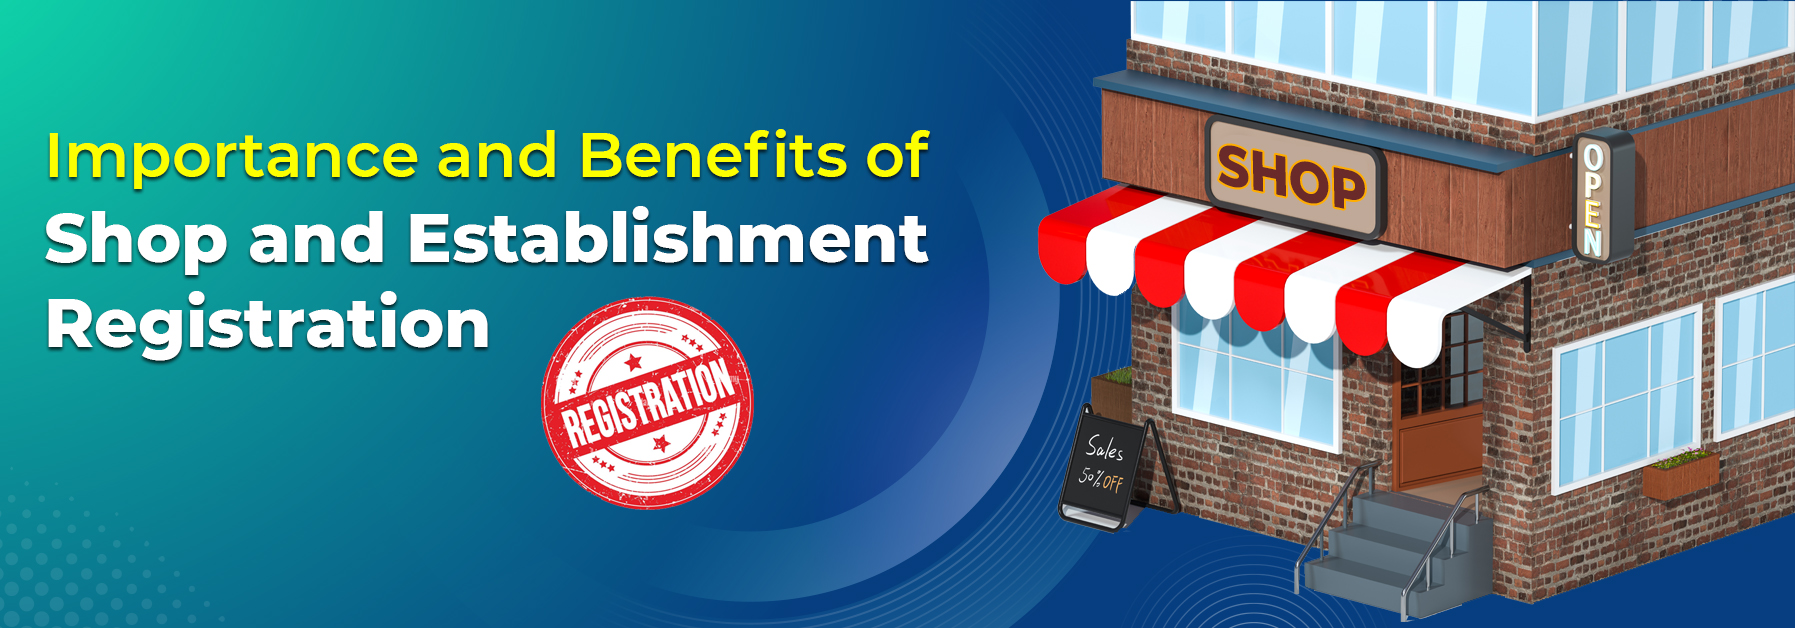 Importance Benefits Shop Establishments